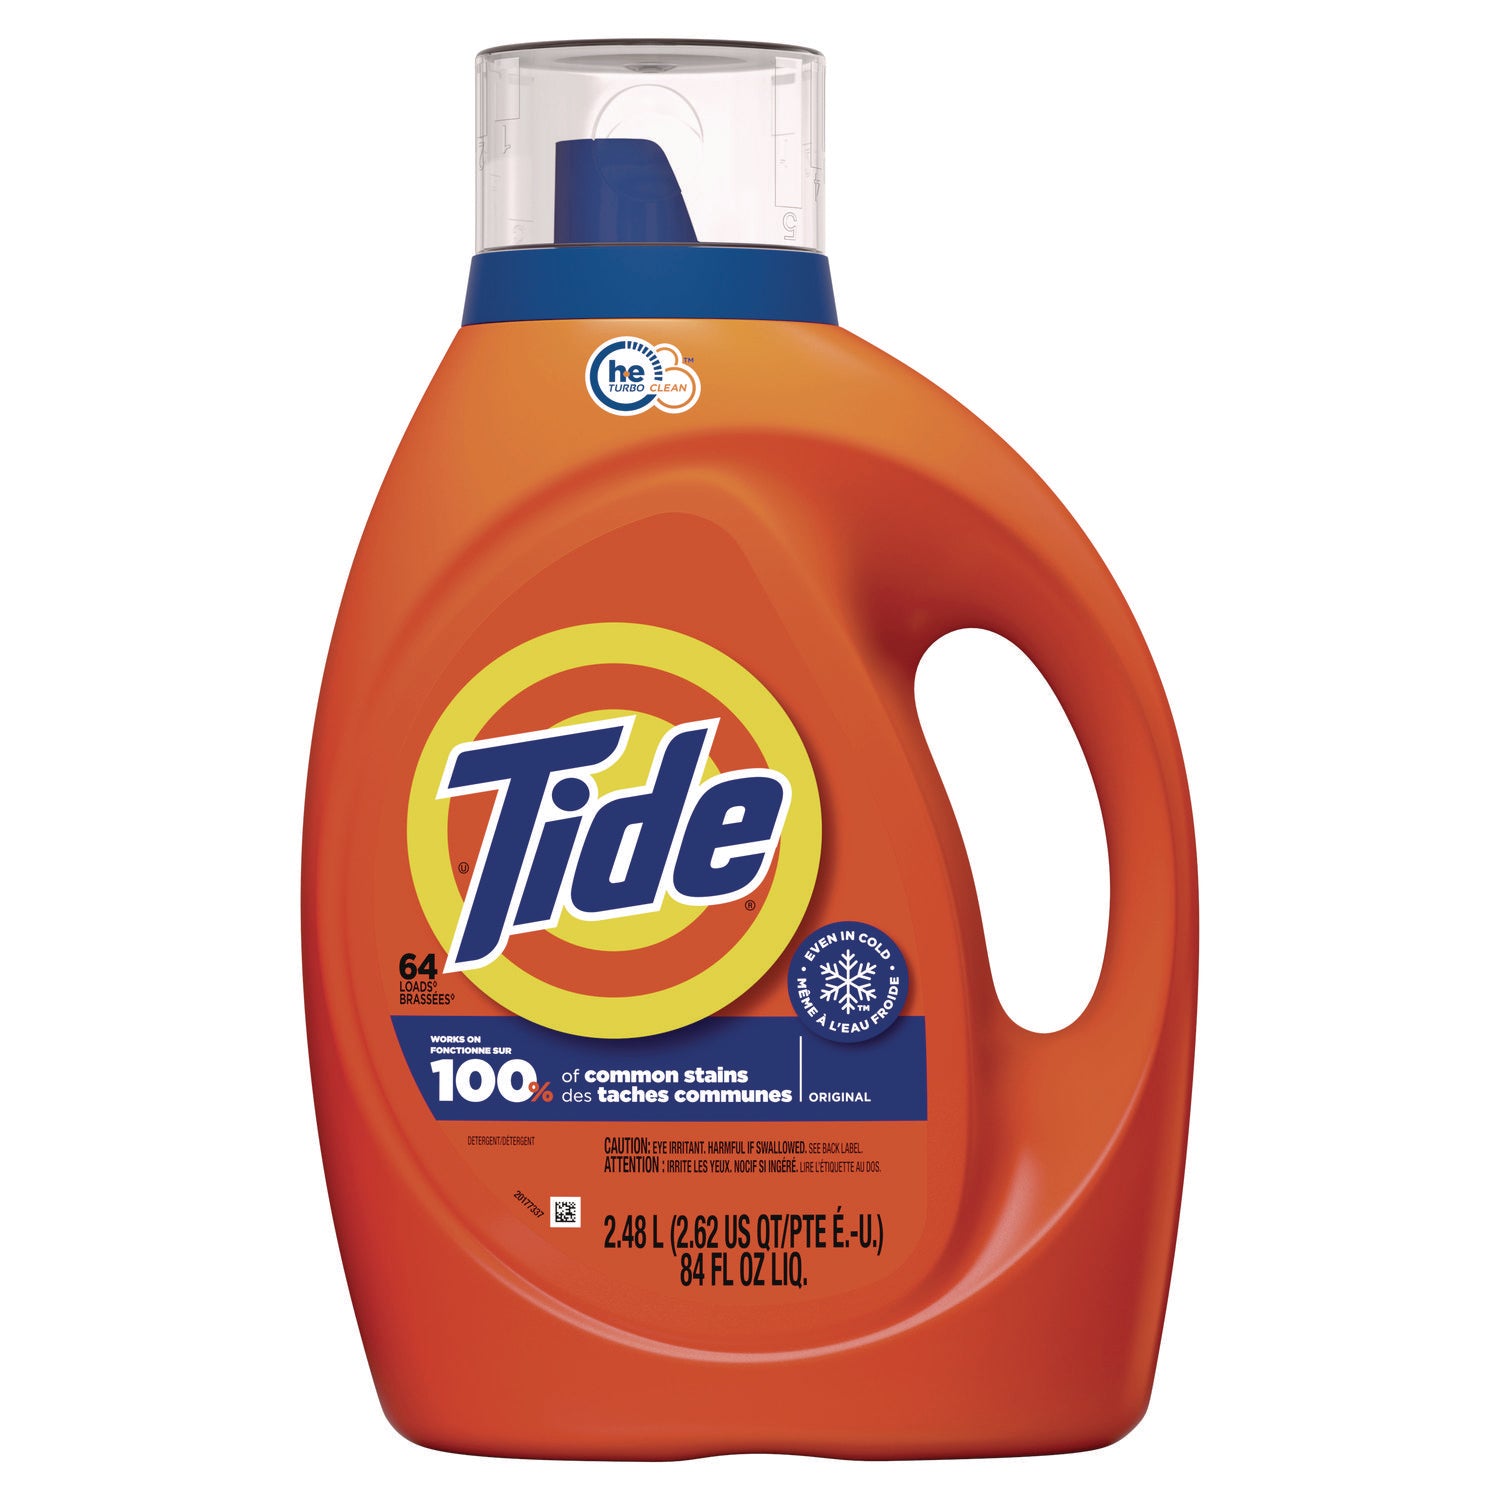 Tide Liquid Laundry Detergent - Concentrate - 92 fl oz (2.9 quart) - Original Scent - 1 Bottle - Blue - 1